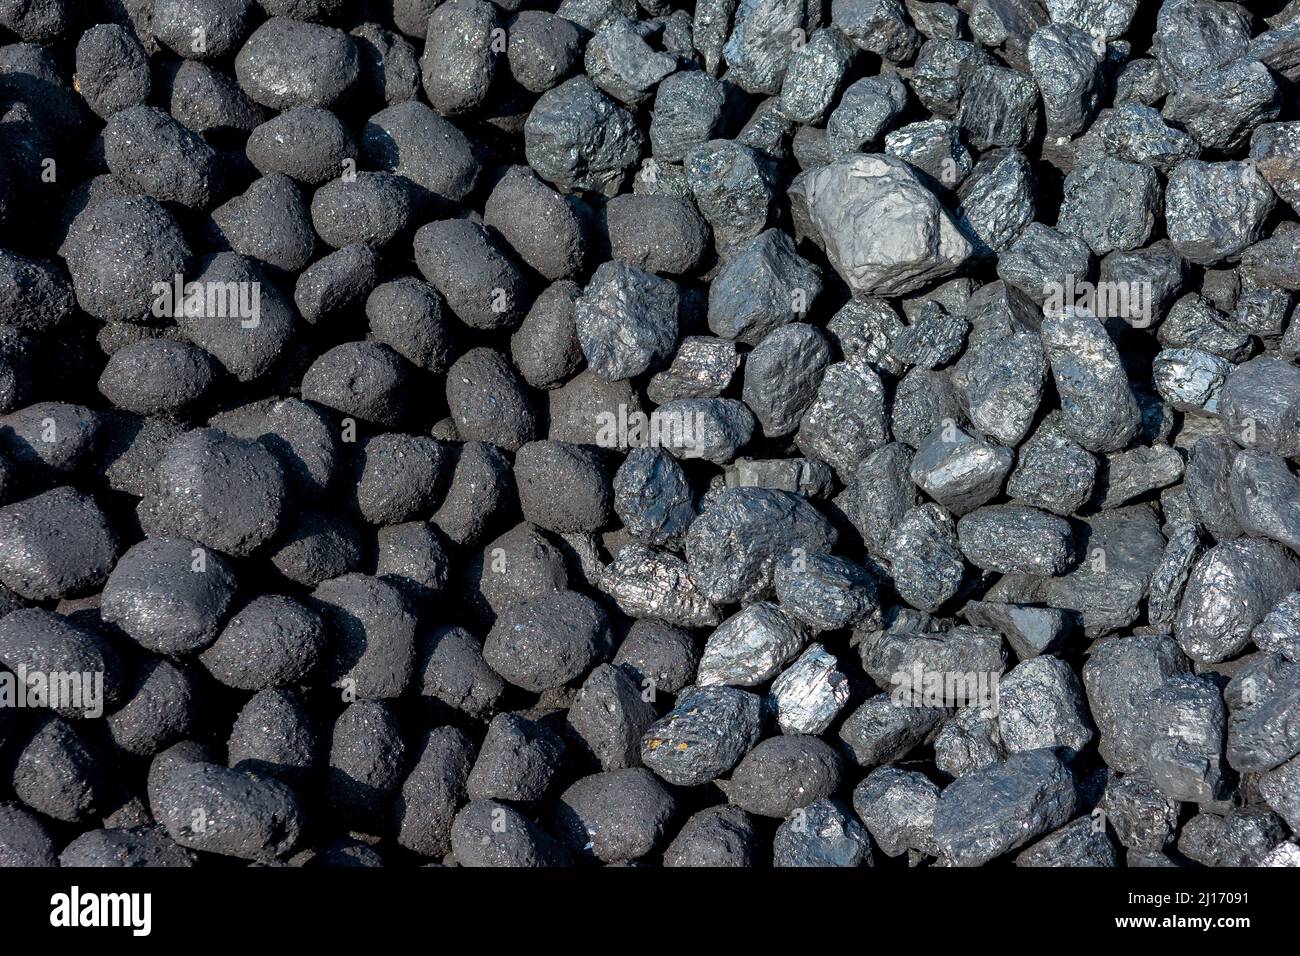 Deux piles de charbon se sont mélangées à un chemin de fer à vapeur Heritage. Nouveaux ovoïdes d'Anthracite comprimés à gauche et charbon en morceaux de vapeur gallois à droite. Banque D'Images